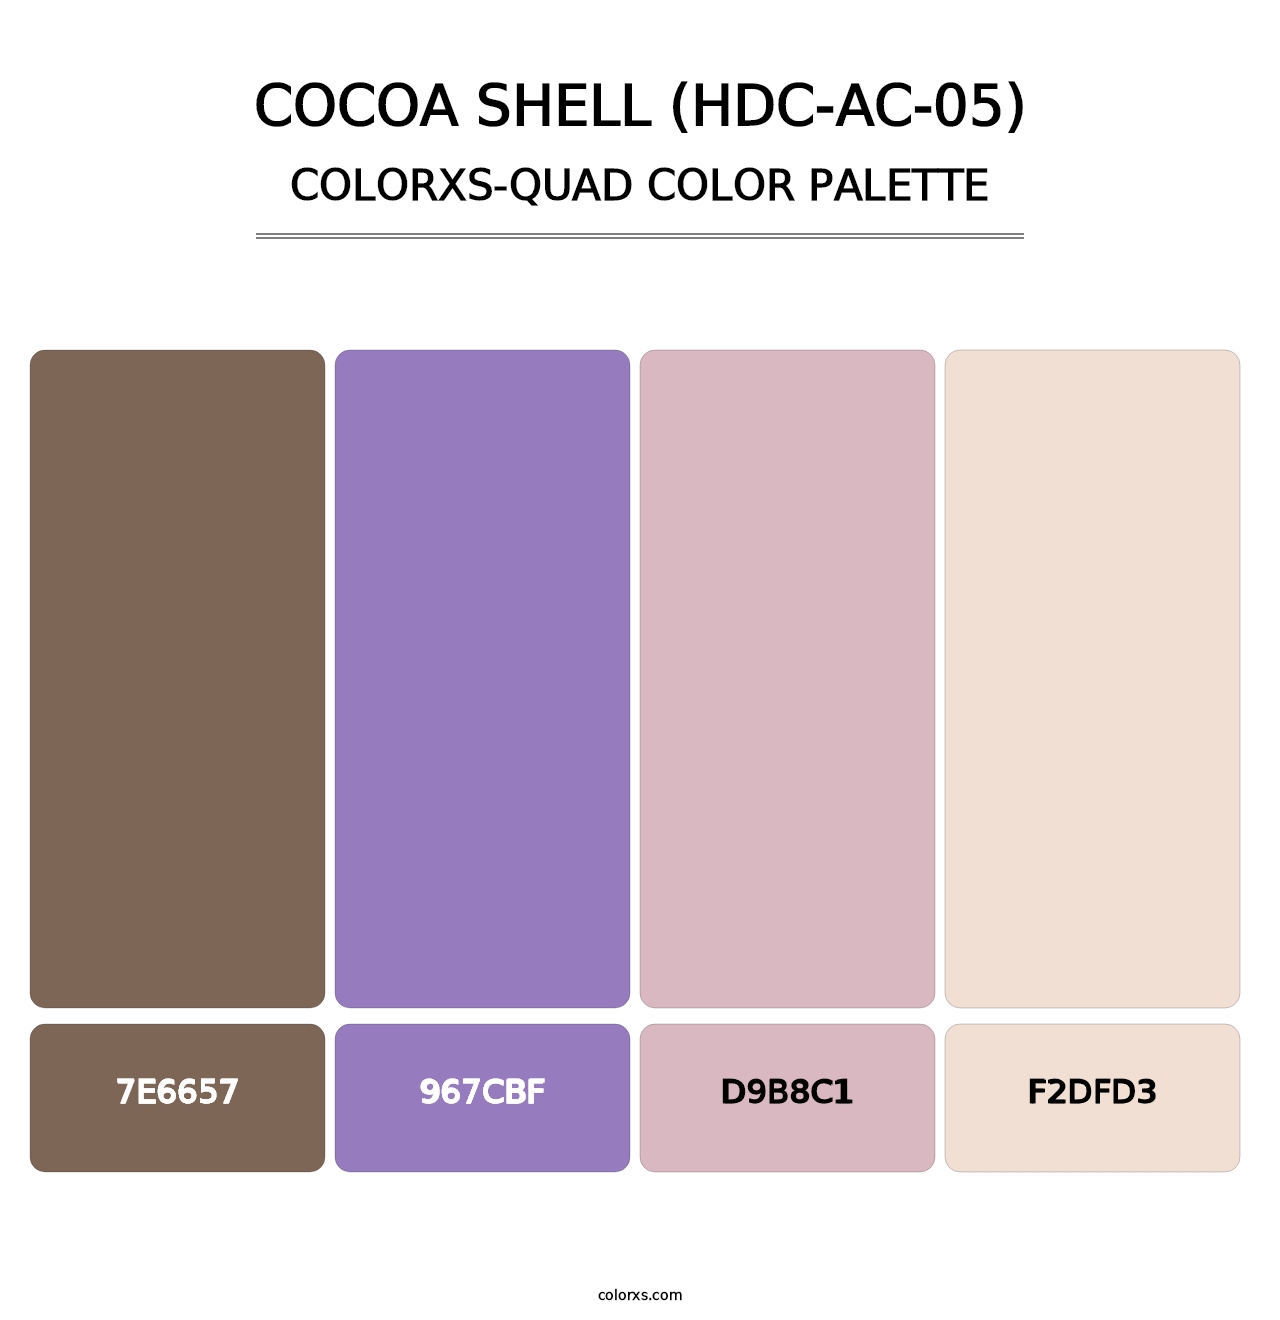 Cocoa Shell (HDC-AC-05) - Colorxs Quad Palette